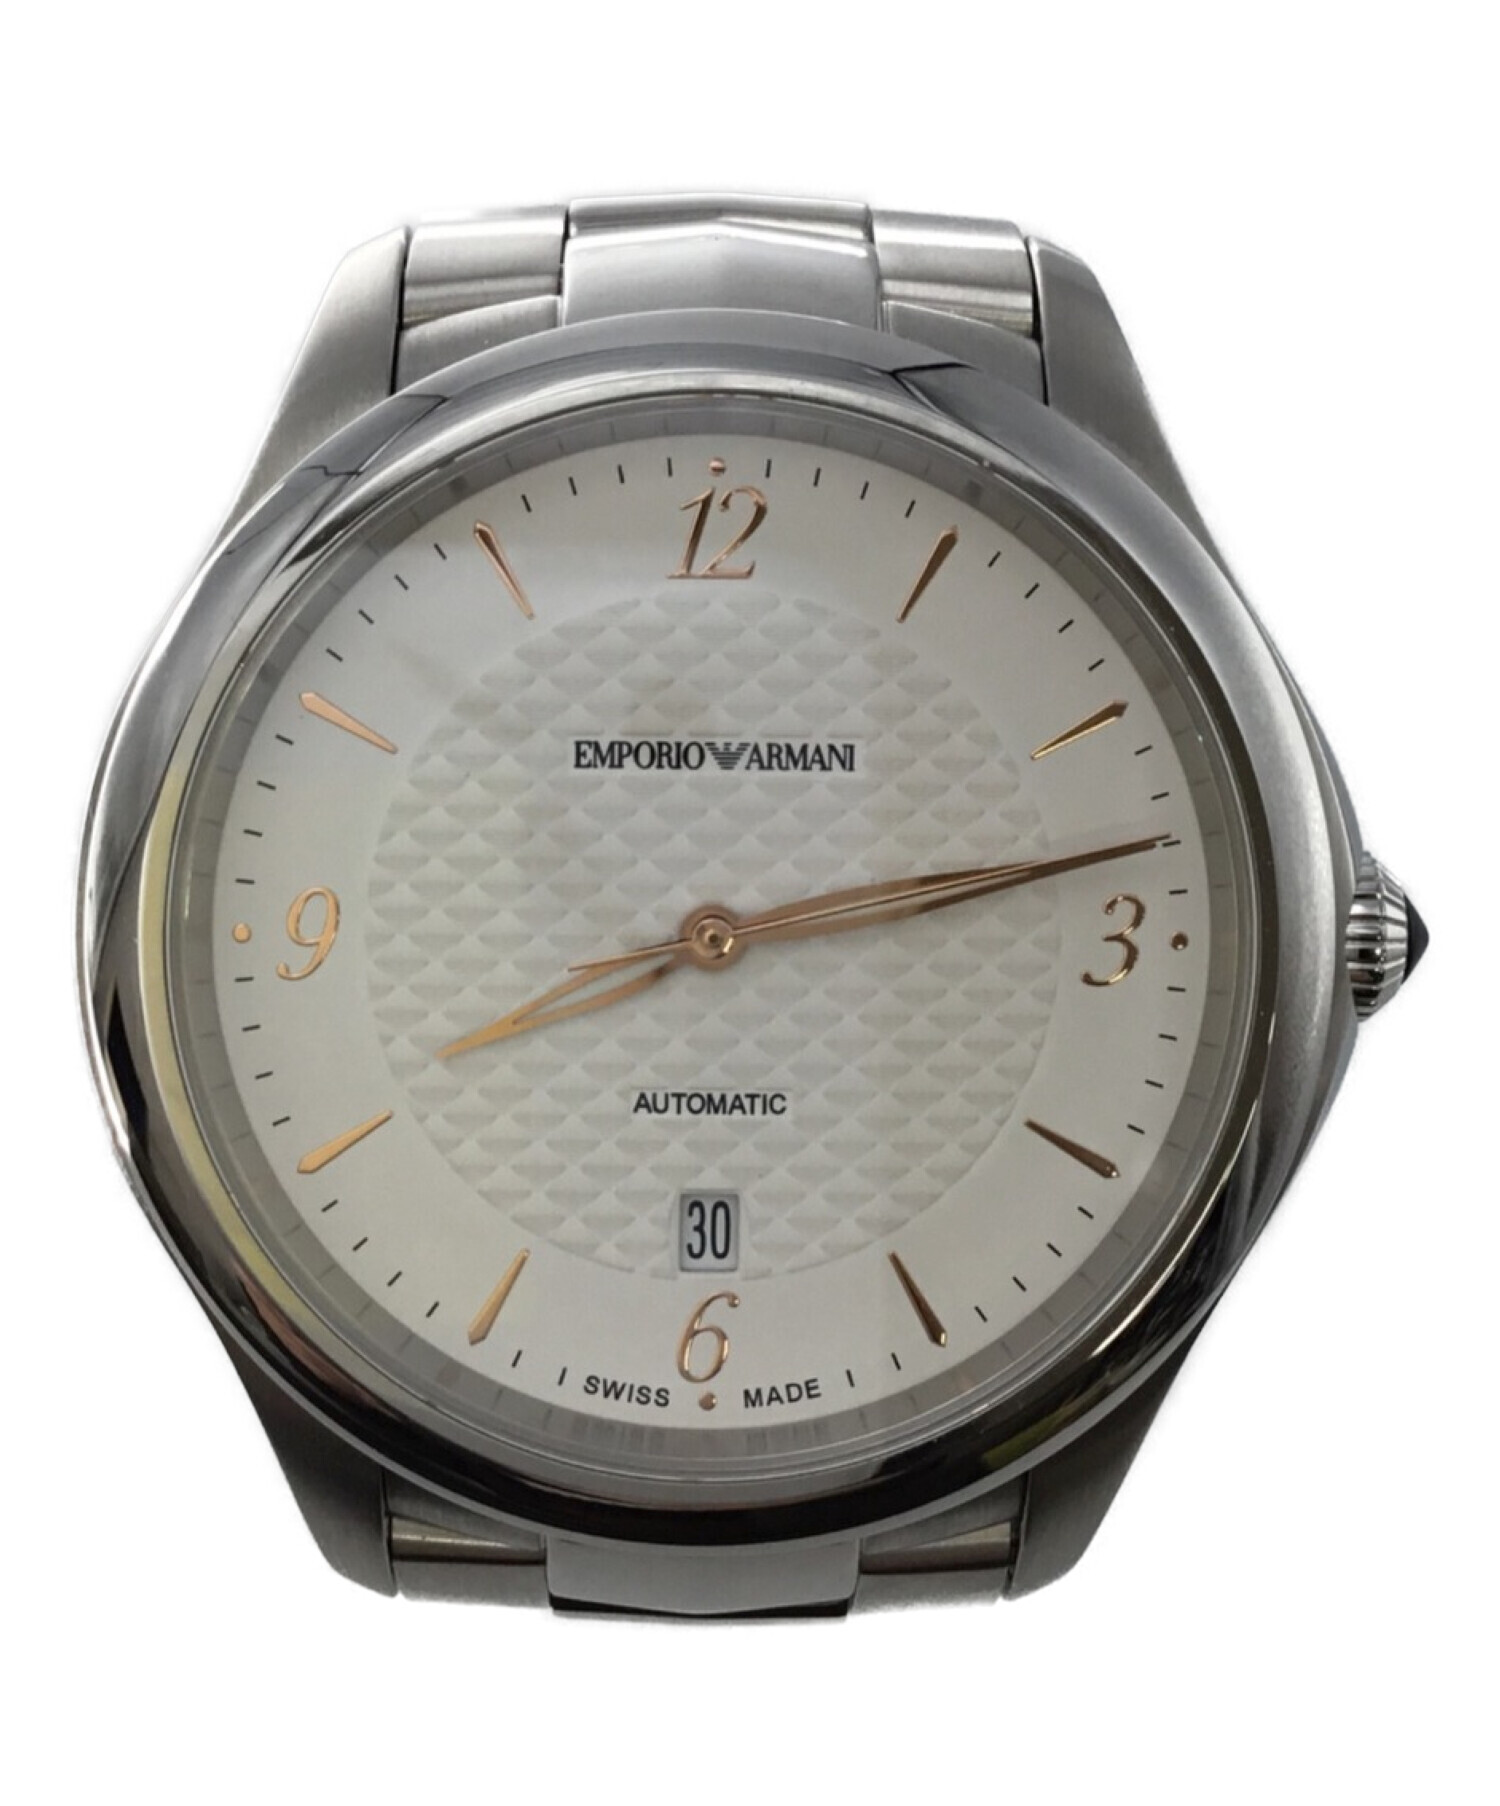 EMPORIO ARMANI (エンポリオアルマーニ) 腕時計 ESEDRA GENT サイズ:-